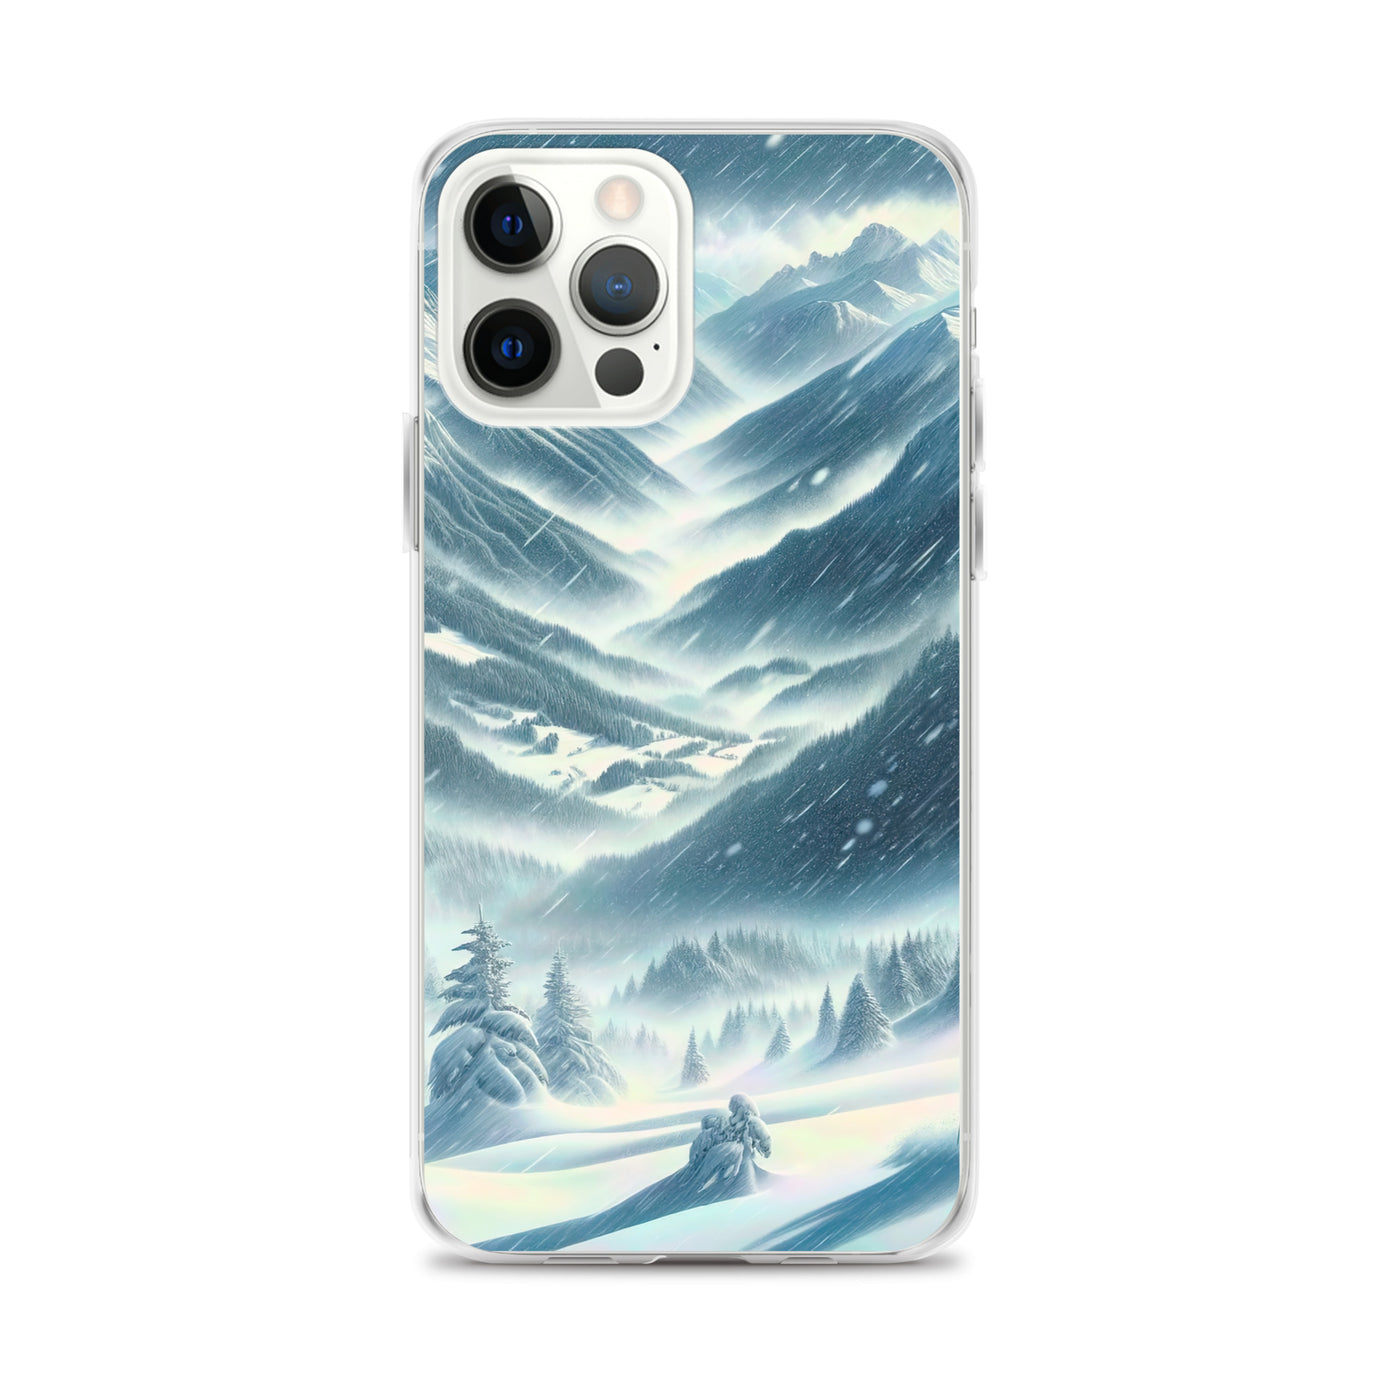 Alpine Wildnis im Wintersturm mit Skifahrer, verschneite Landschaft - iPhone Schutzhülle (durchsichtig) klettern ski xxx yyy zzz iPhone 12 Pro Max